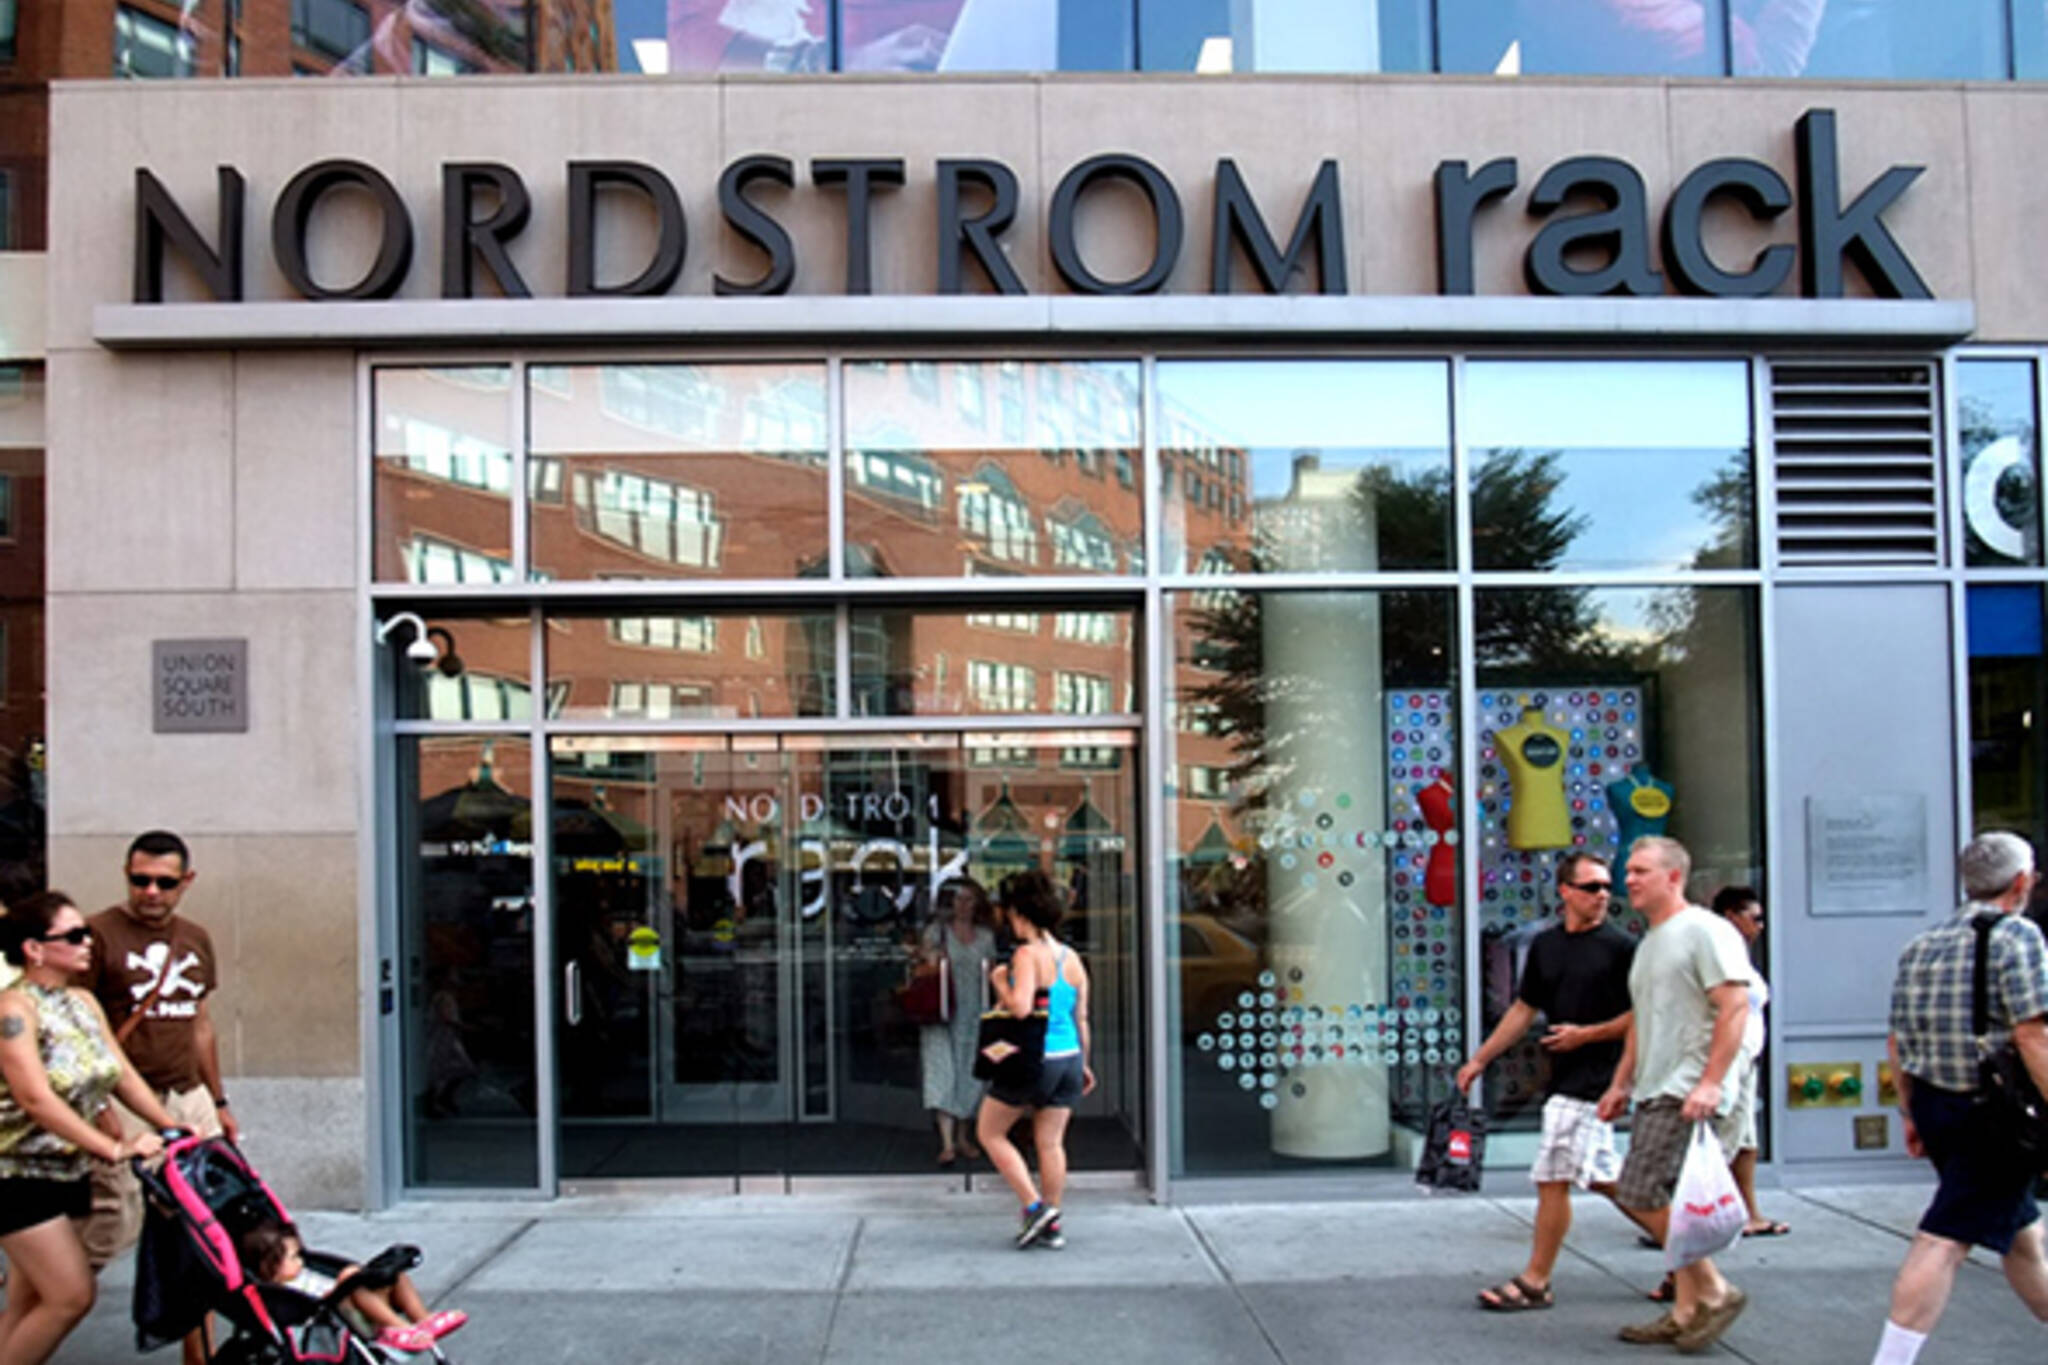 Nordstrom Rack to open in Toronto nordstrom rack new york